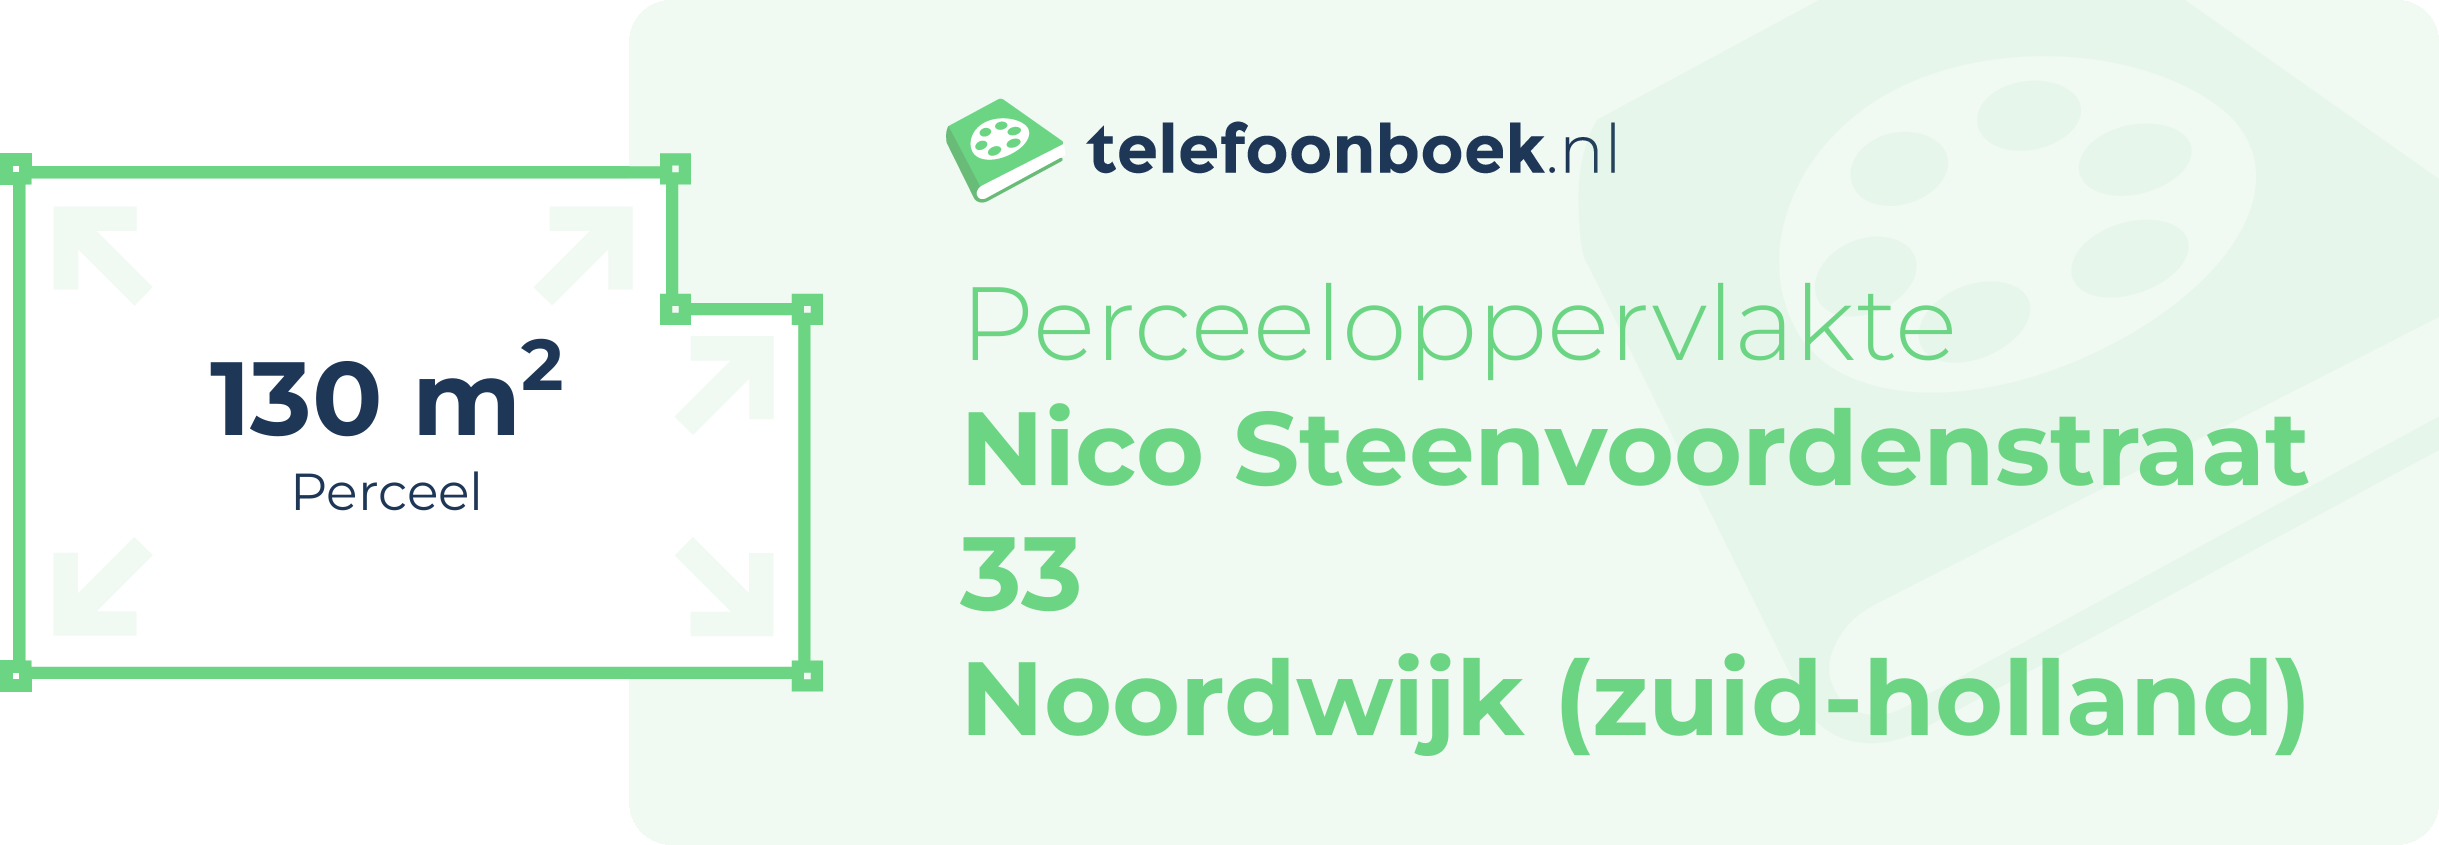 Perceeloppervlakte Nico Steenvoordenstraat 33 Noordwijk (Zuid-Holland)